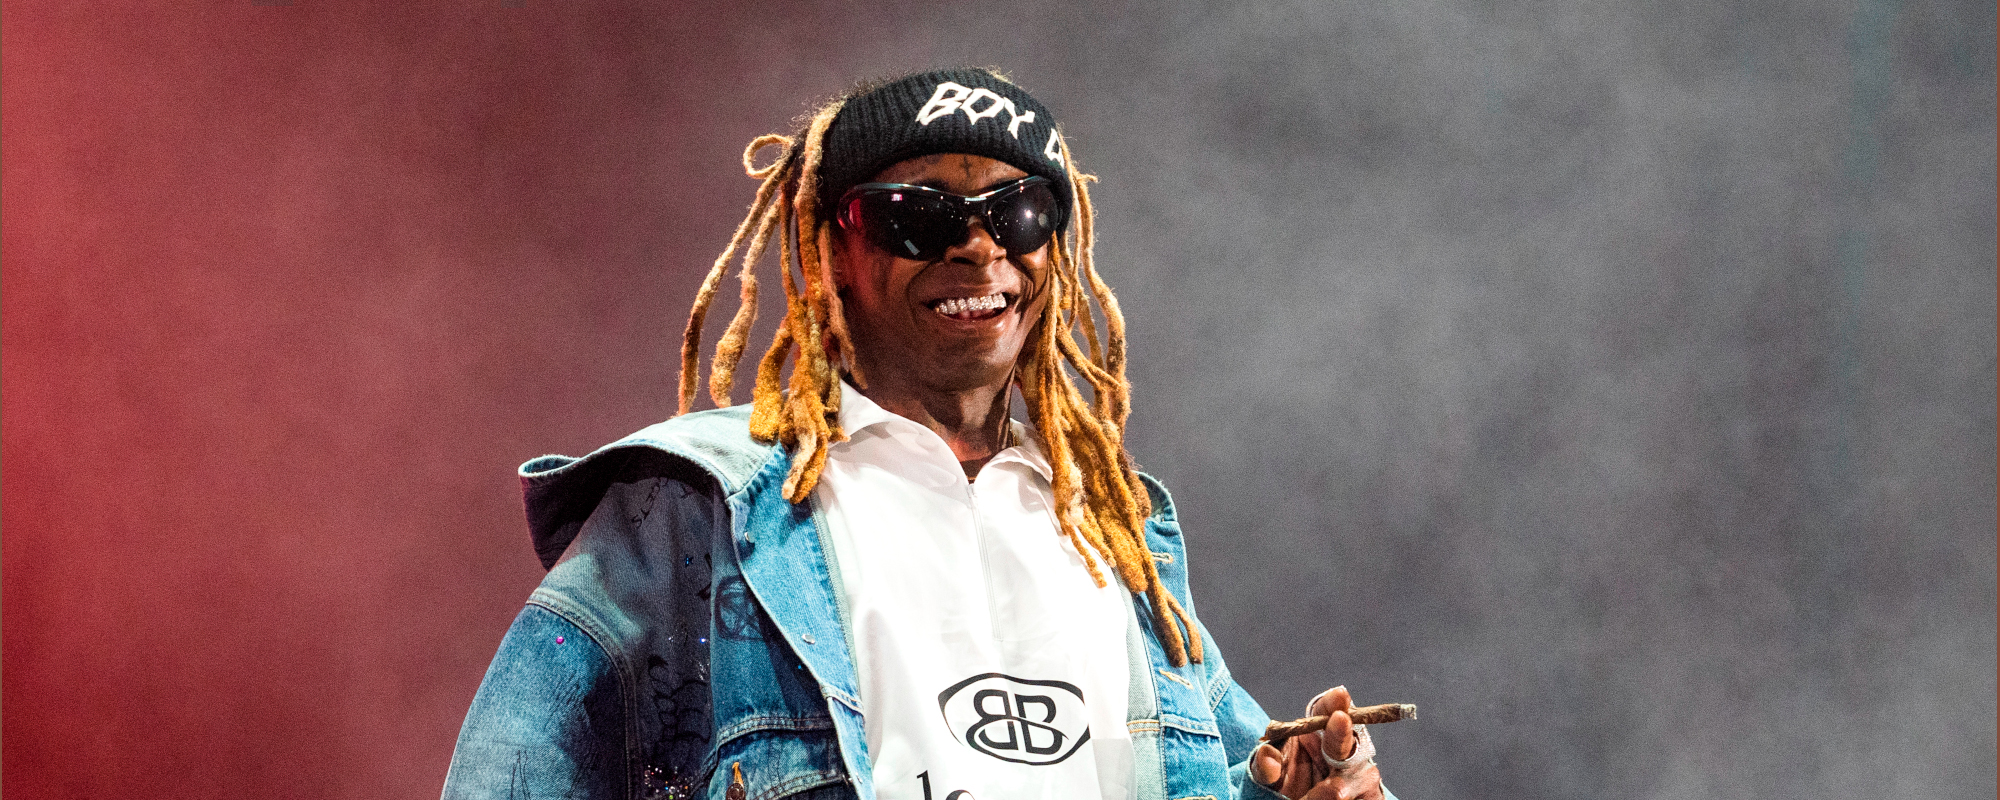 Nouvelle chanson samedi !  Écoutez de nouveaux morceaux de The National, Lil Wayne avec DMX, Halsey et plus